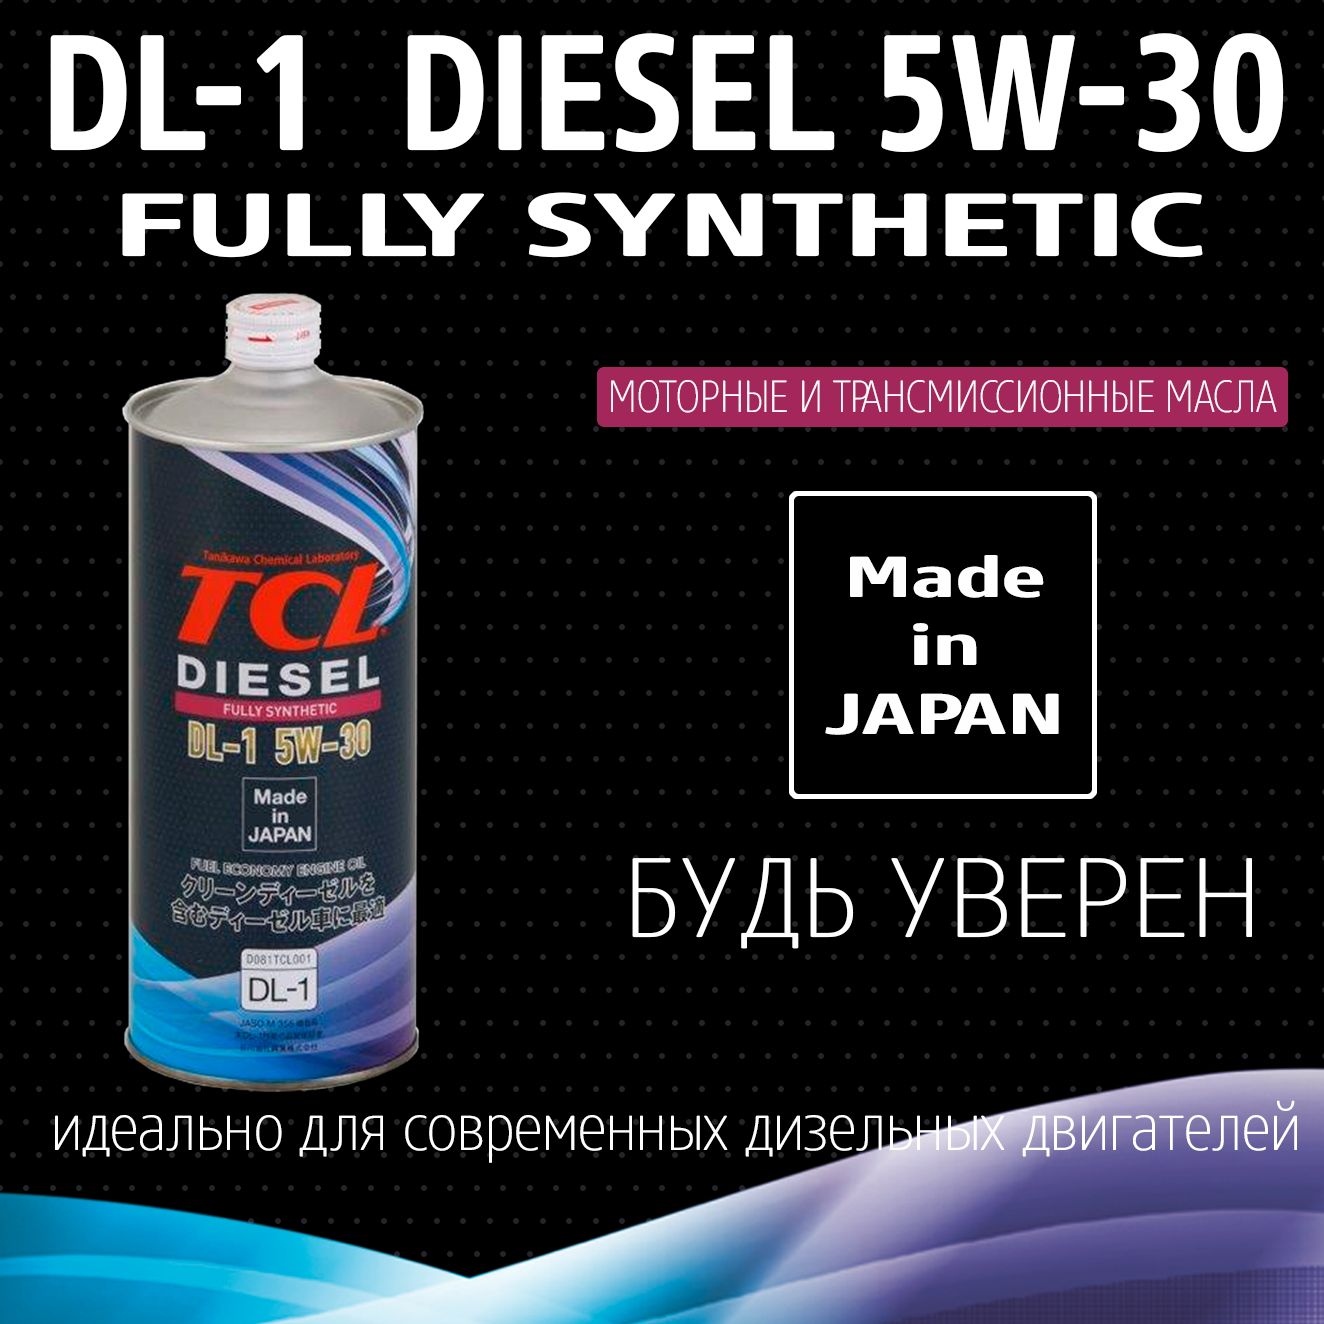 Моторное масло tcl 5w30. Масло ТСЛ 5в30. TCL масло моторное 5w-30. Масло для дизельных двигателей TCL Diesel, fully Synth, DL-1, 5w30, 1л. Моторное масло TCL 5w-30 DL-1.